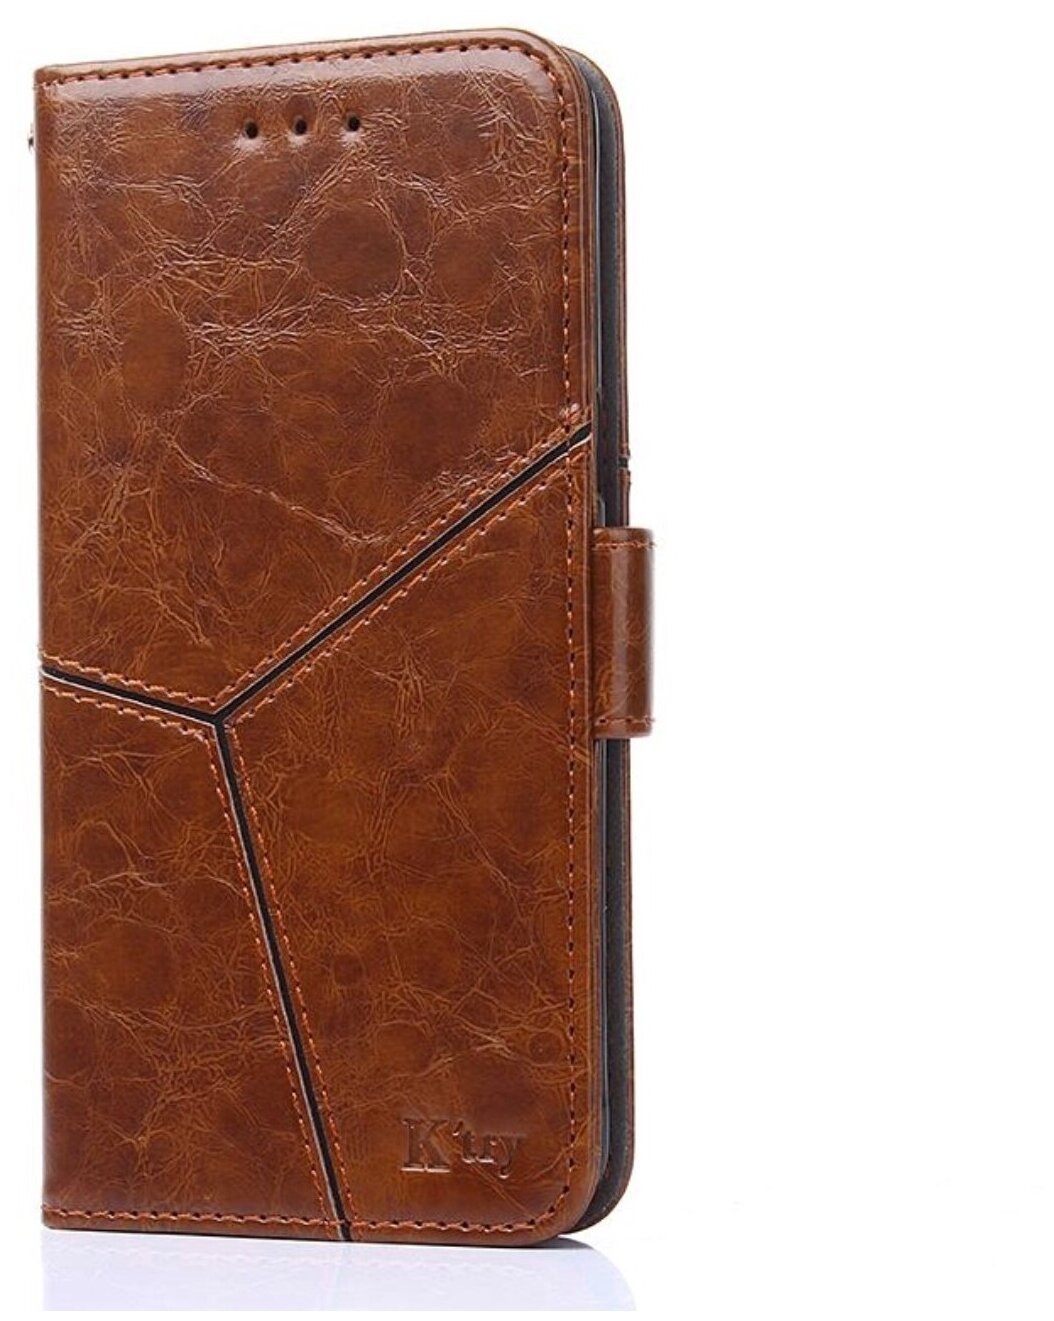 Чехол-книжка Чехол. ру для Nokia 7 прошитый по контуру с необычным геометрическим швом коричневый